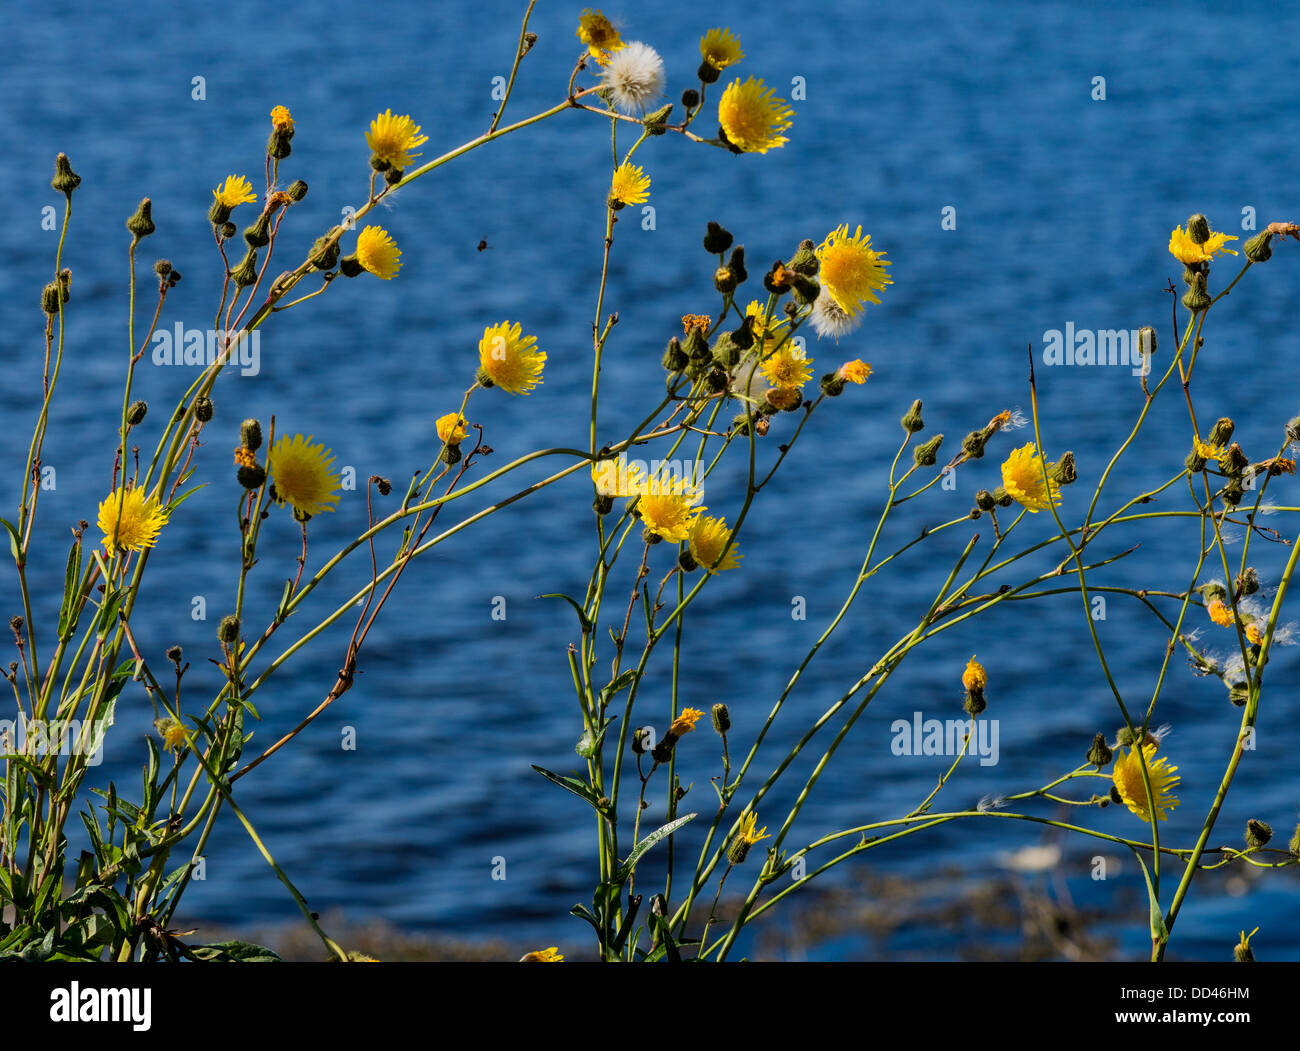 Gelb blühenden Unkräutern Blauwasser im Hintergrund Stockfoto